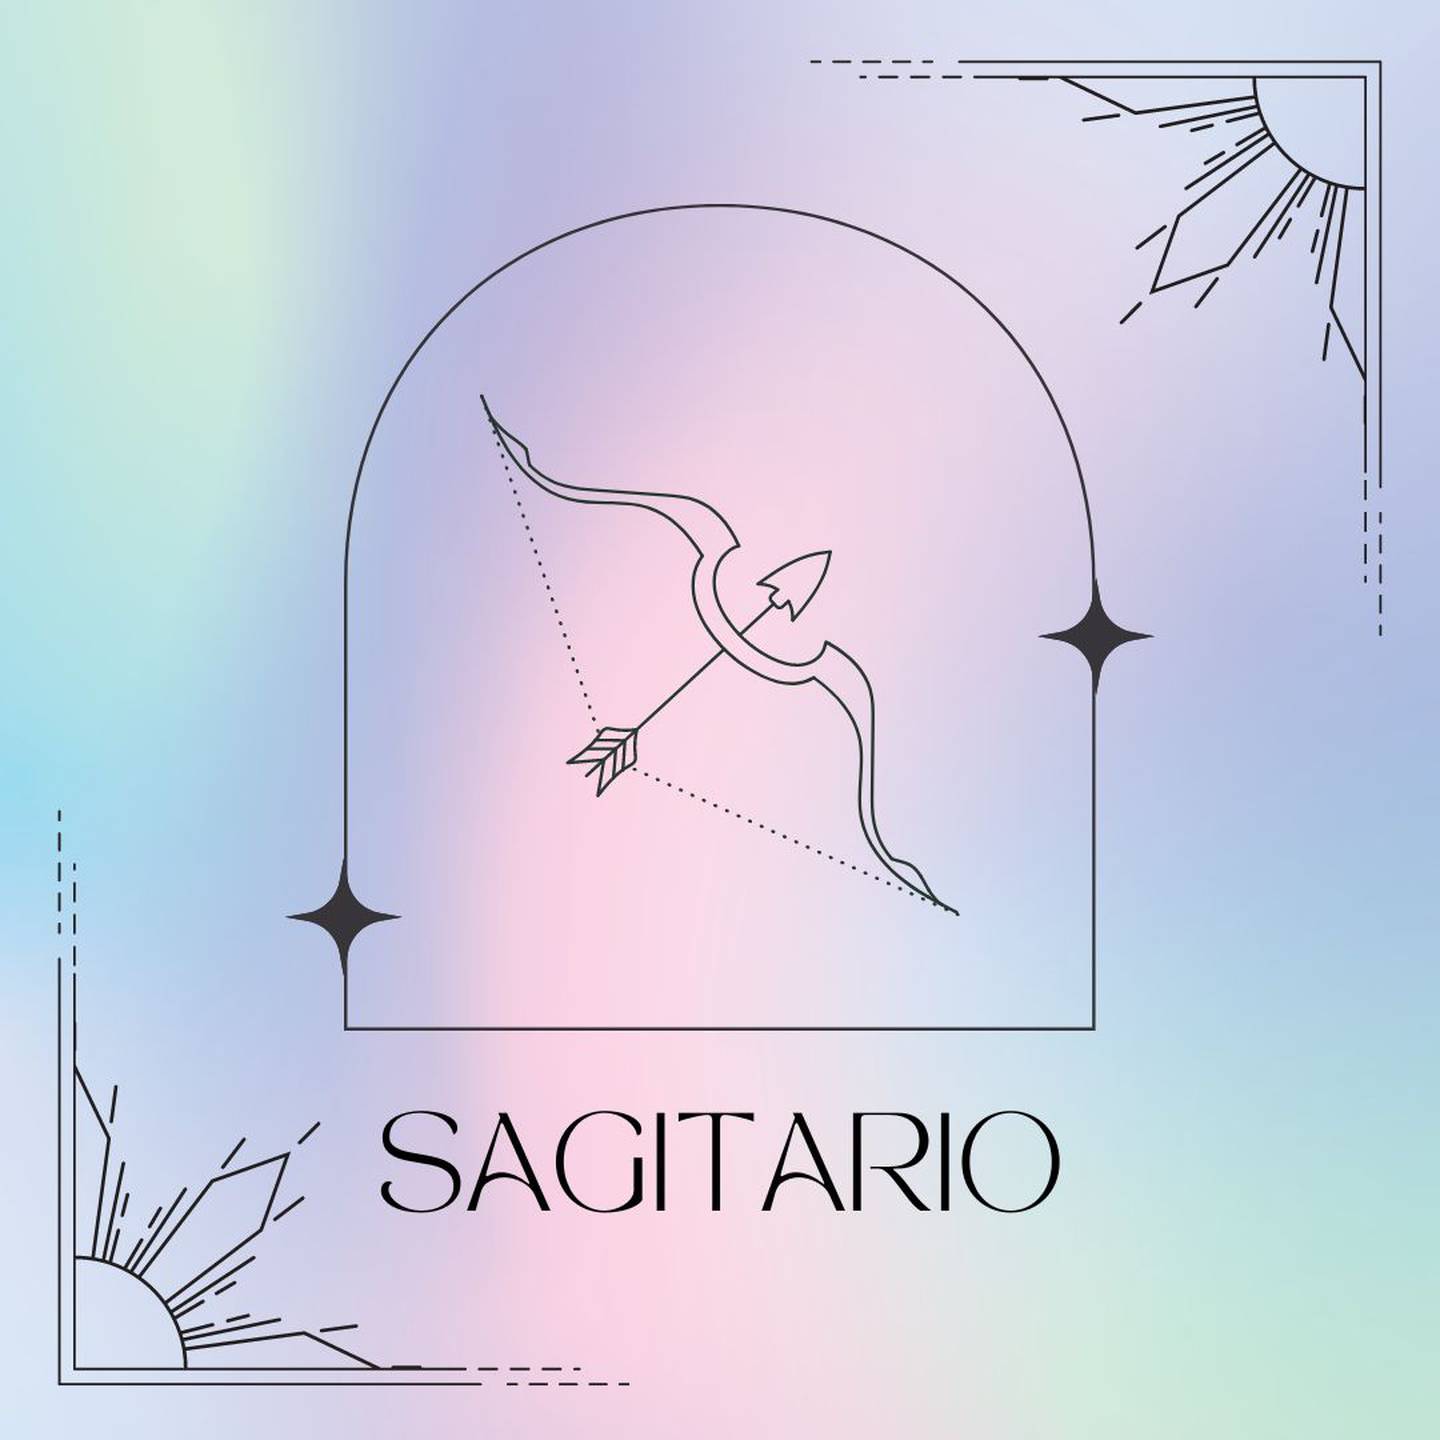 Dibujado en negro, el símbolo de Sagitario aparece enmarcado sobre un fondo de suaves colores pastel.